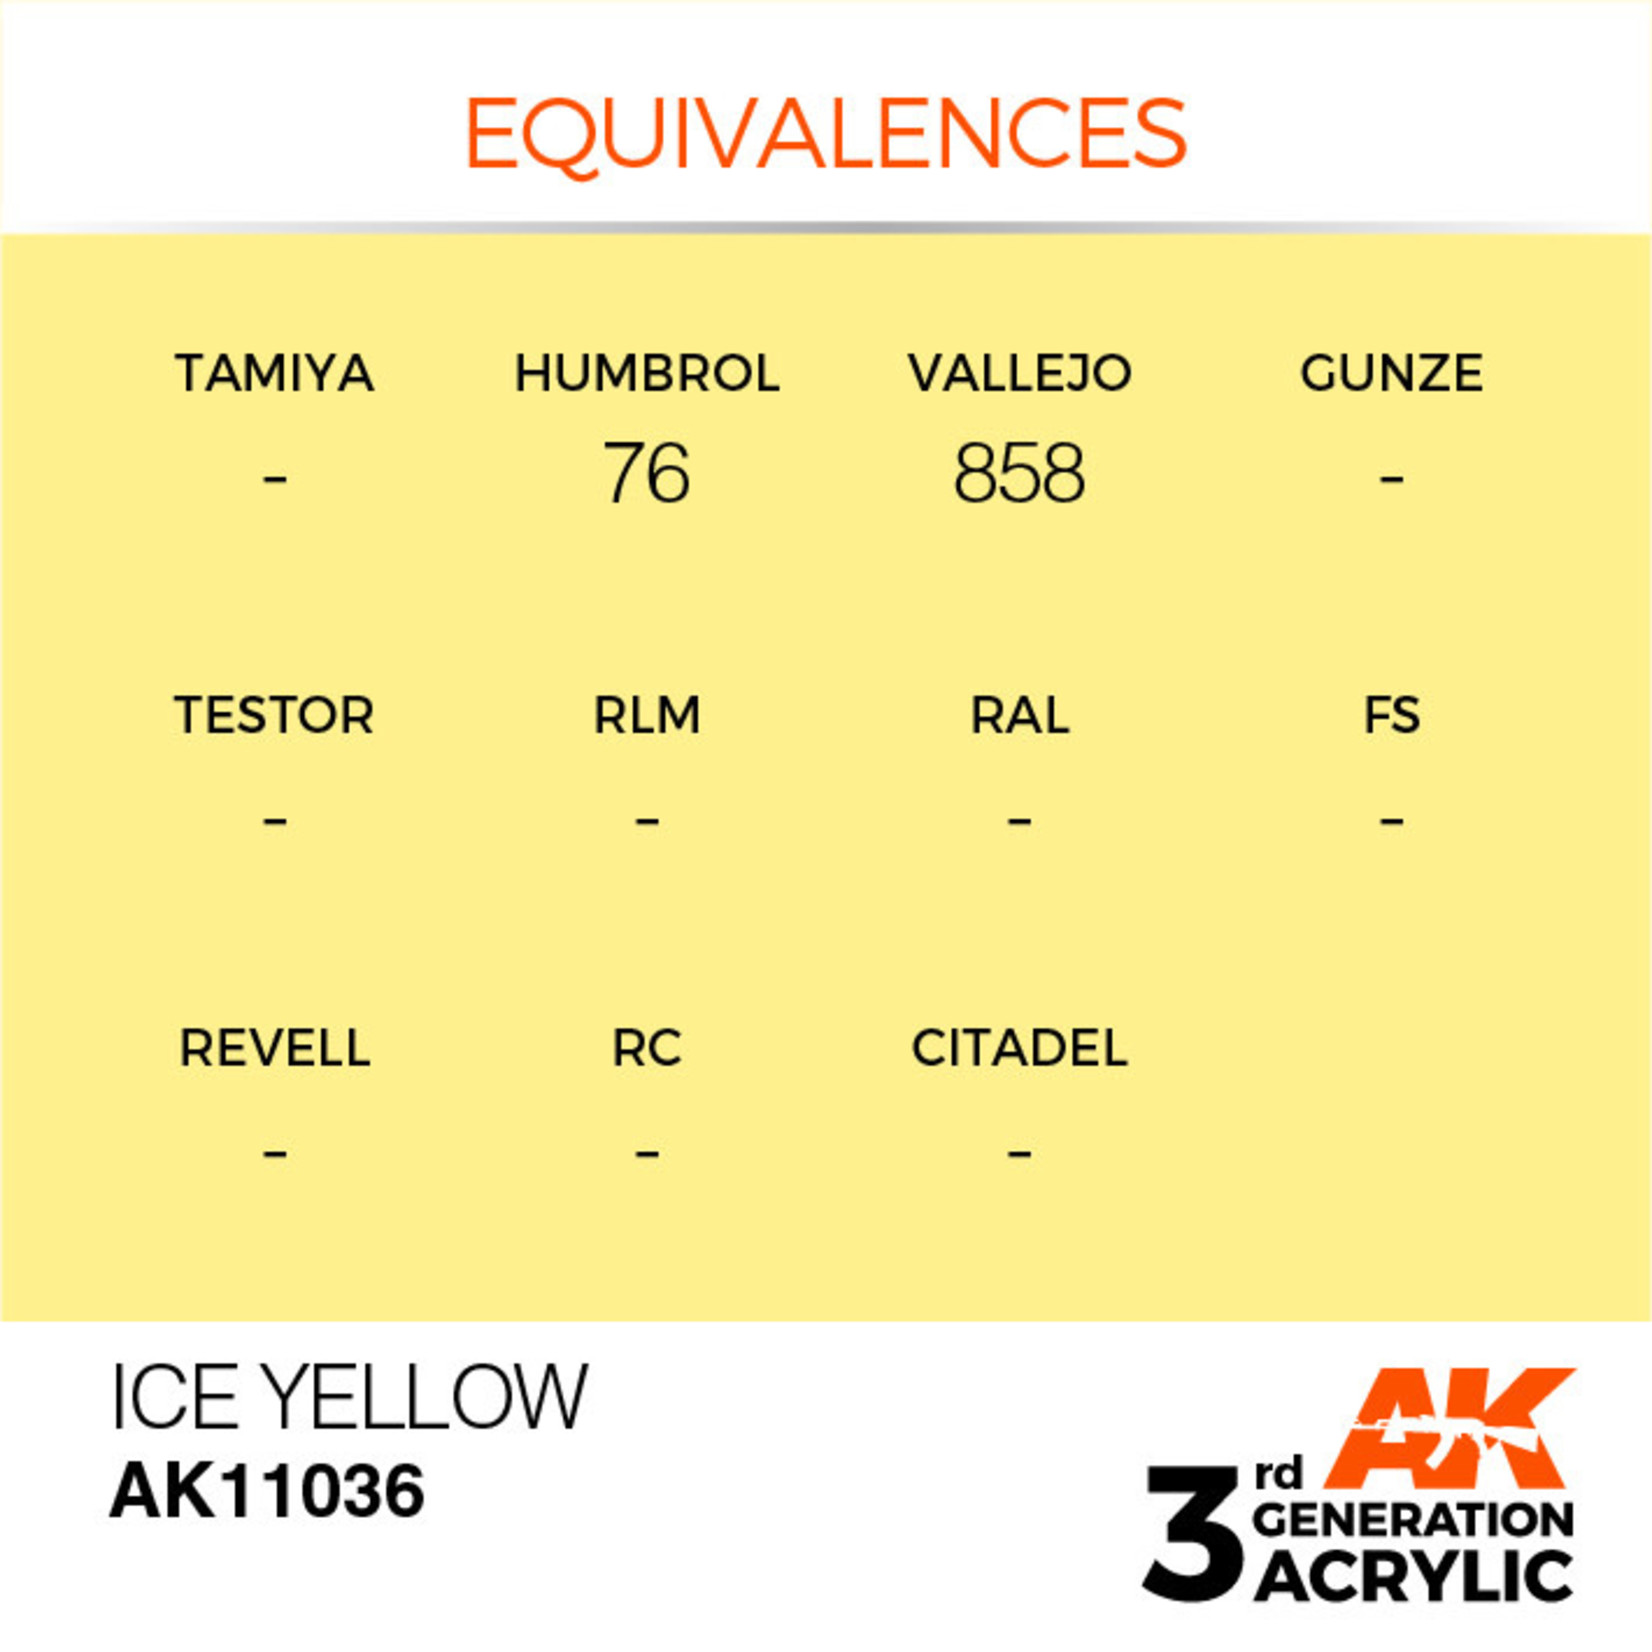 AK Interactive AK11036 3G Acrylic Ice Yellow 17ml